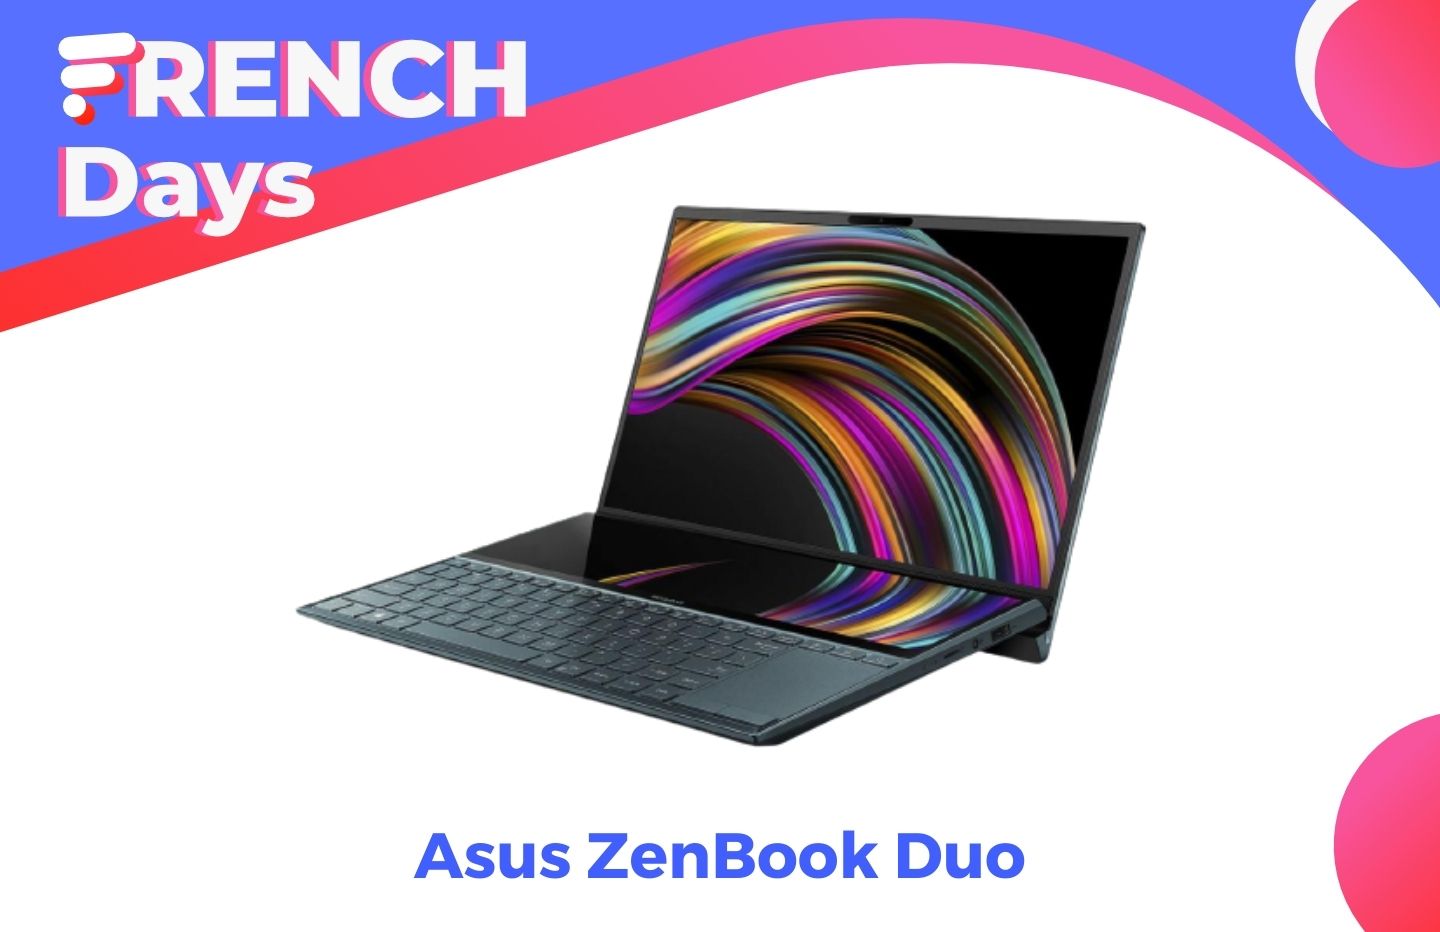 L’Asus ZenBook Duo (avec 2 écrans) tombe est à un super prix pour les French Days